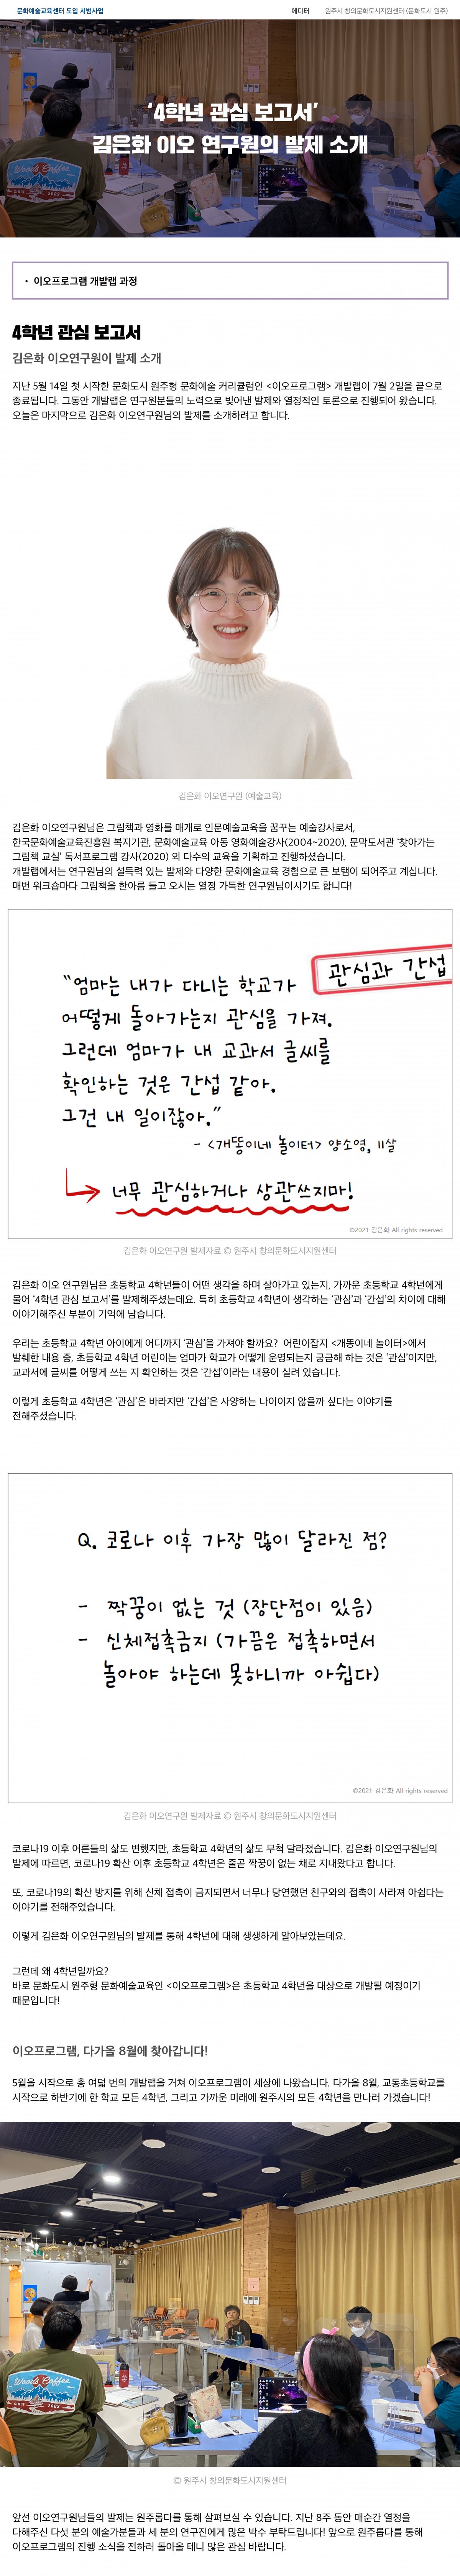 [이오프로그램] ‘4학년 관심보고서’ 김은화 이오 연구원의 발제 소개